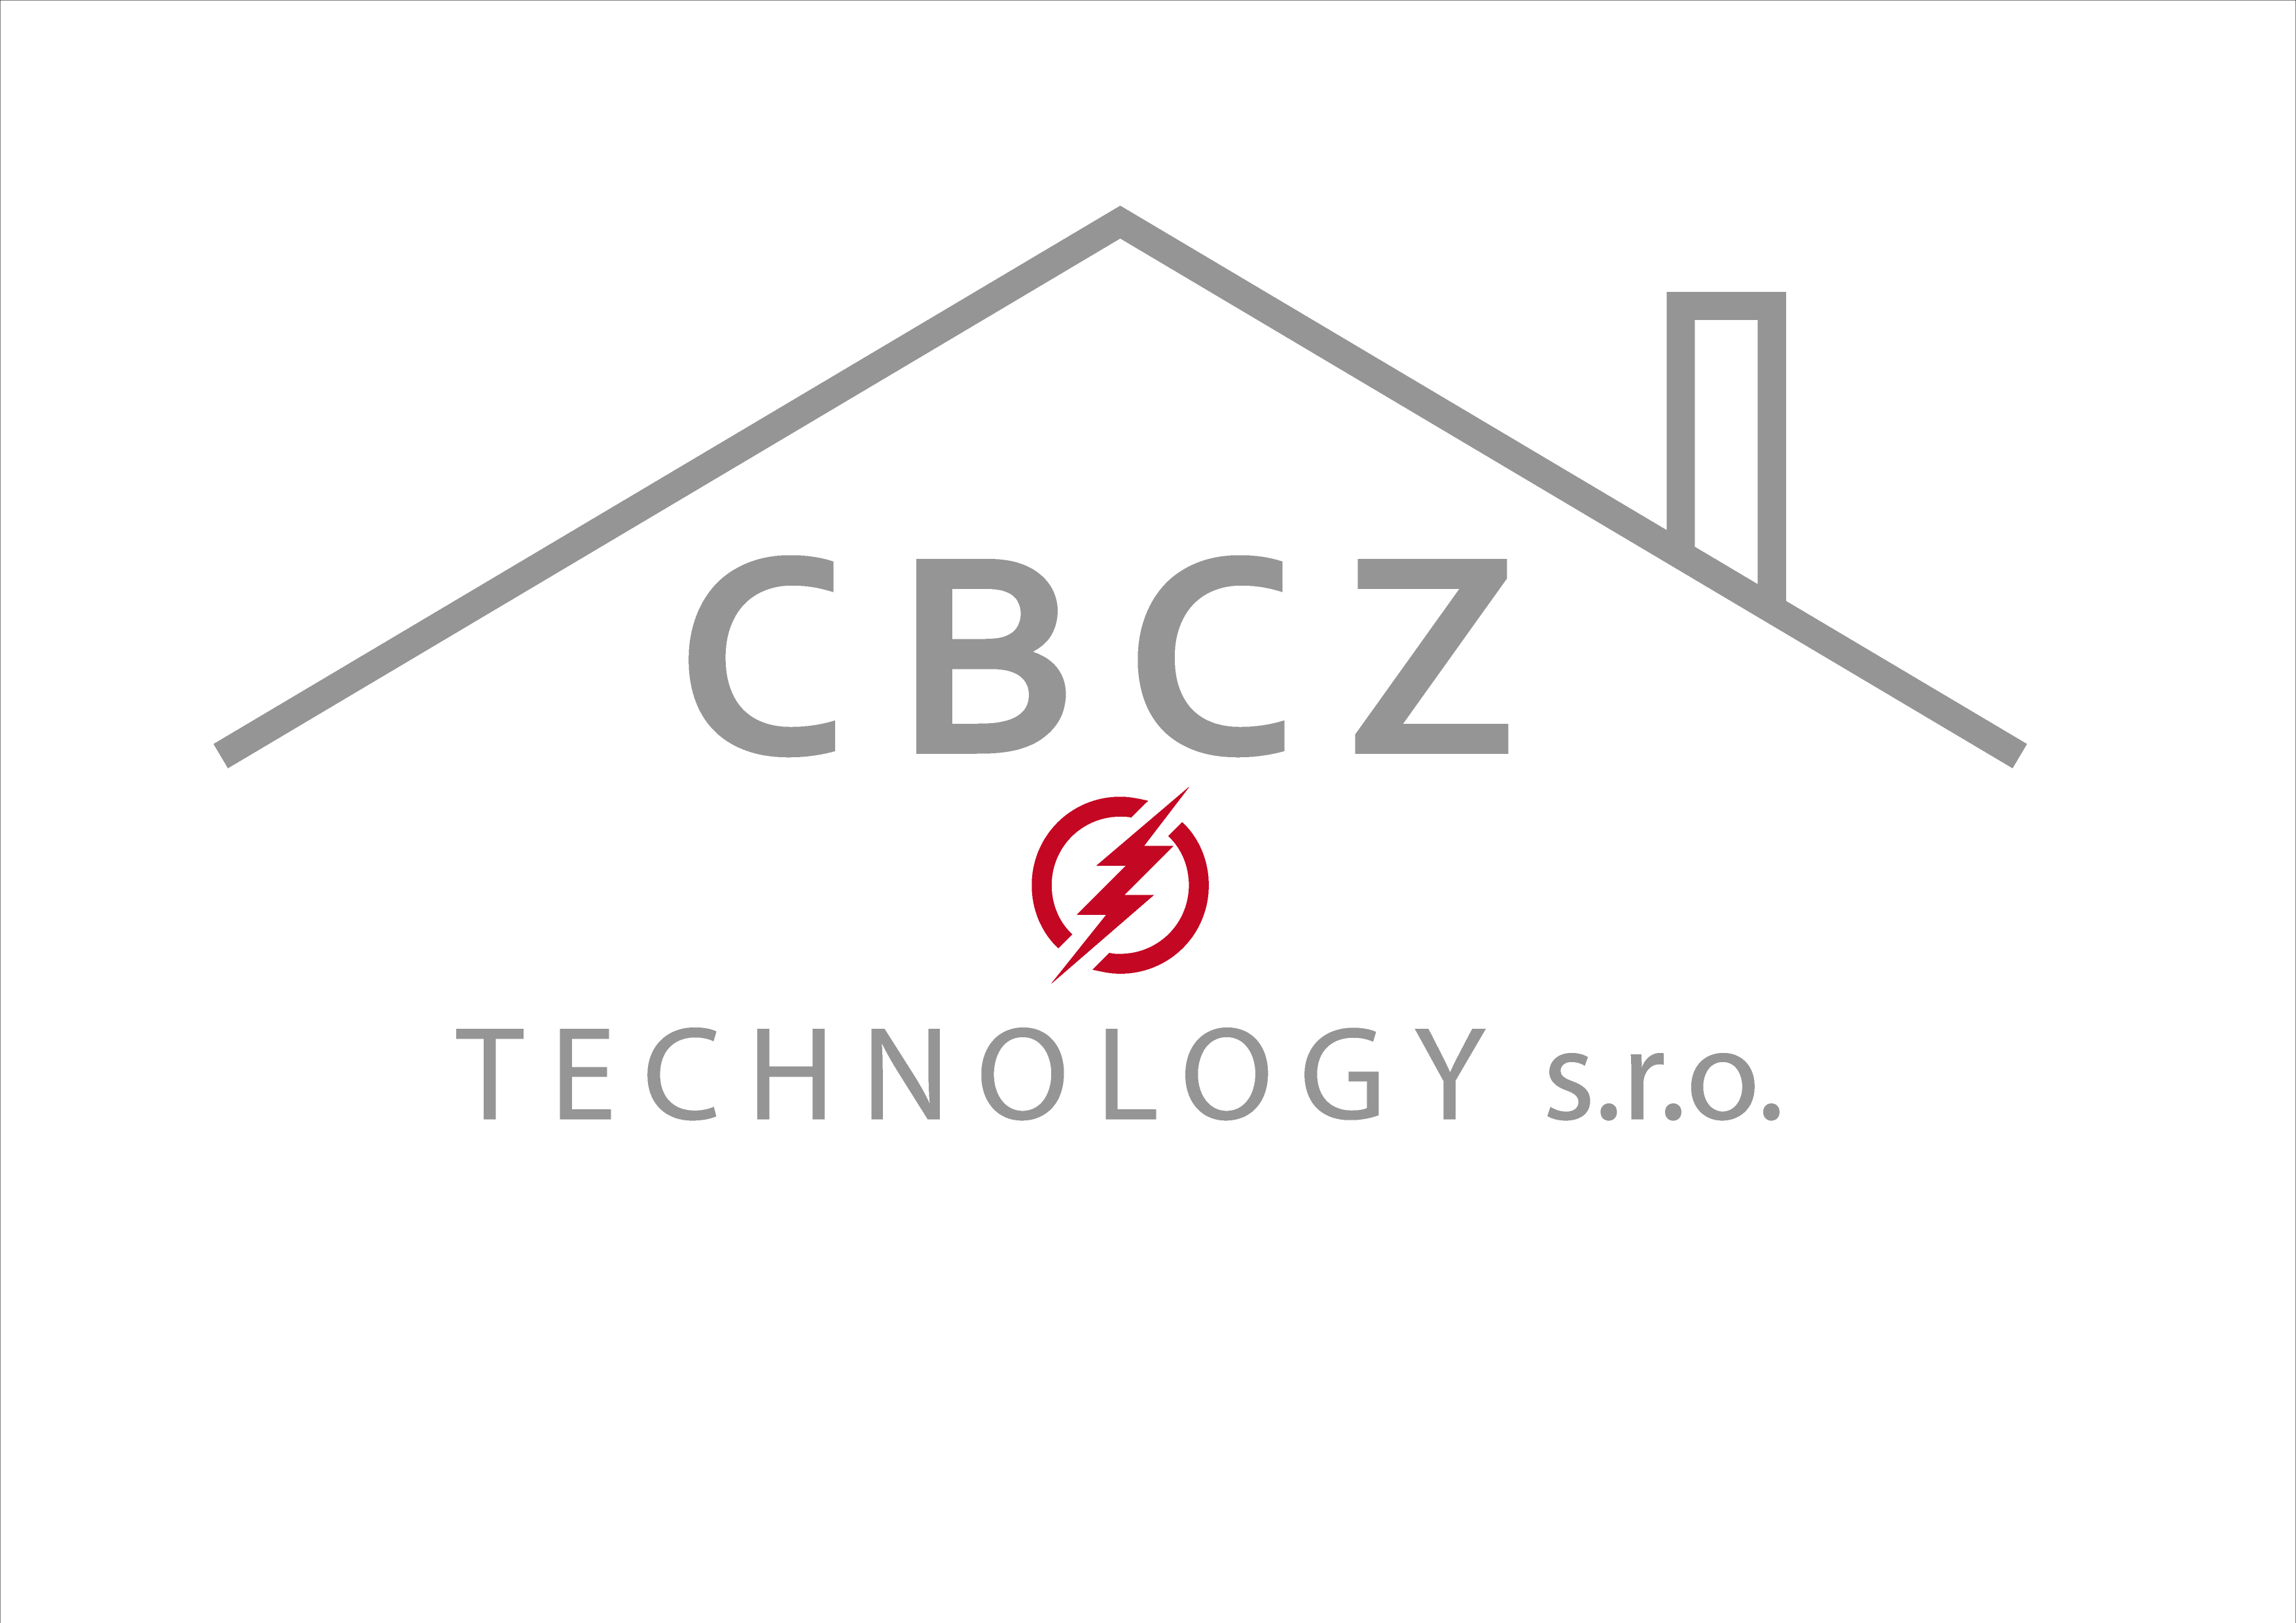 CBCZ Technology